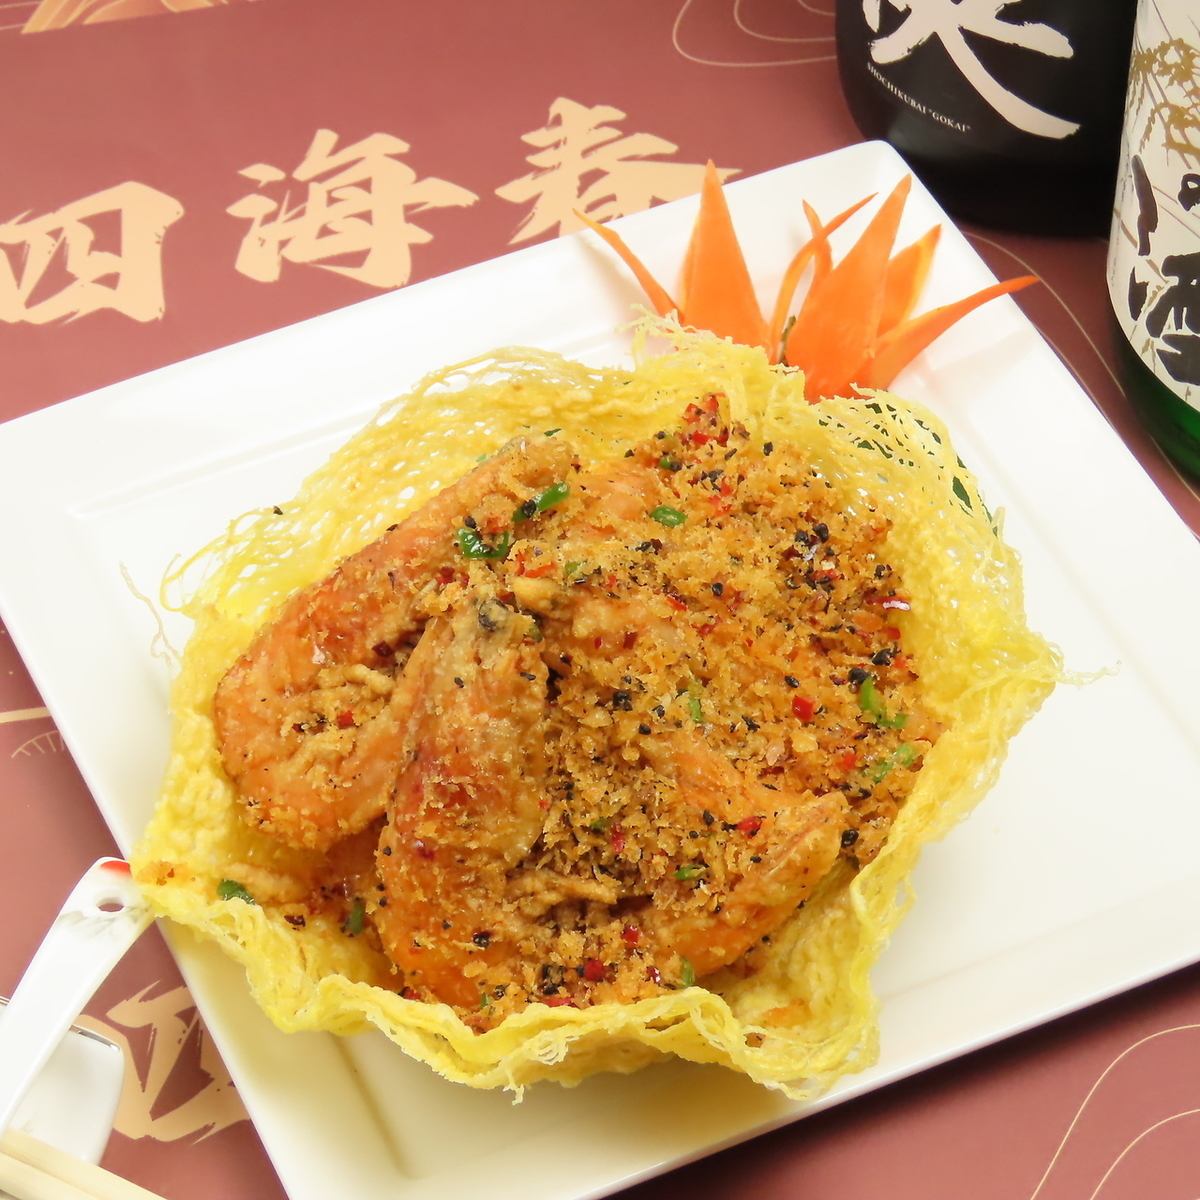 중국 남방의 창작 요리 중에서도 새우와 게를 사용한 해물 요리가 자랑!